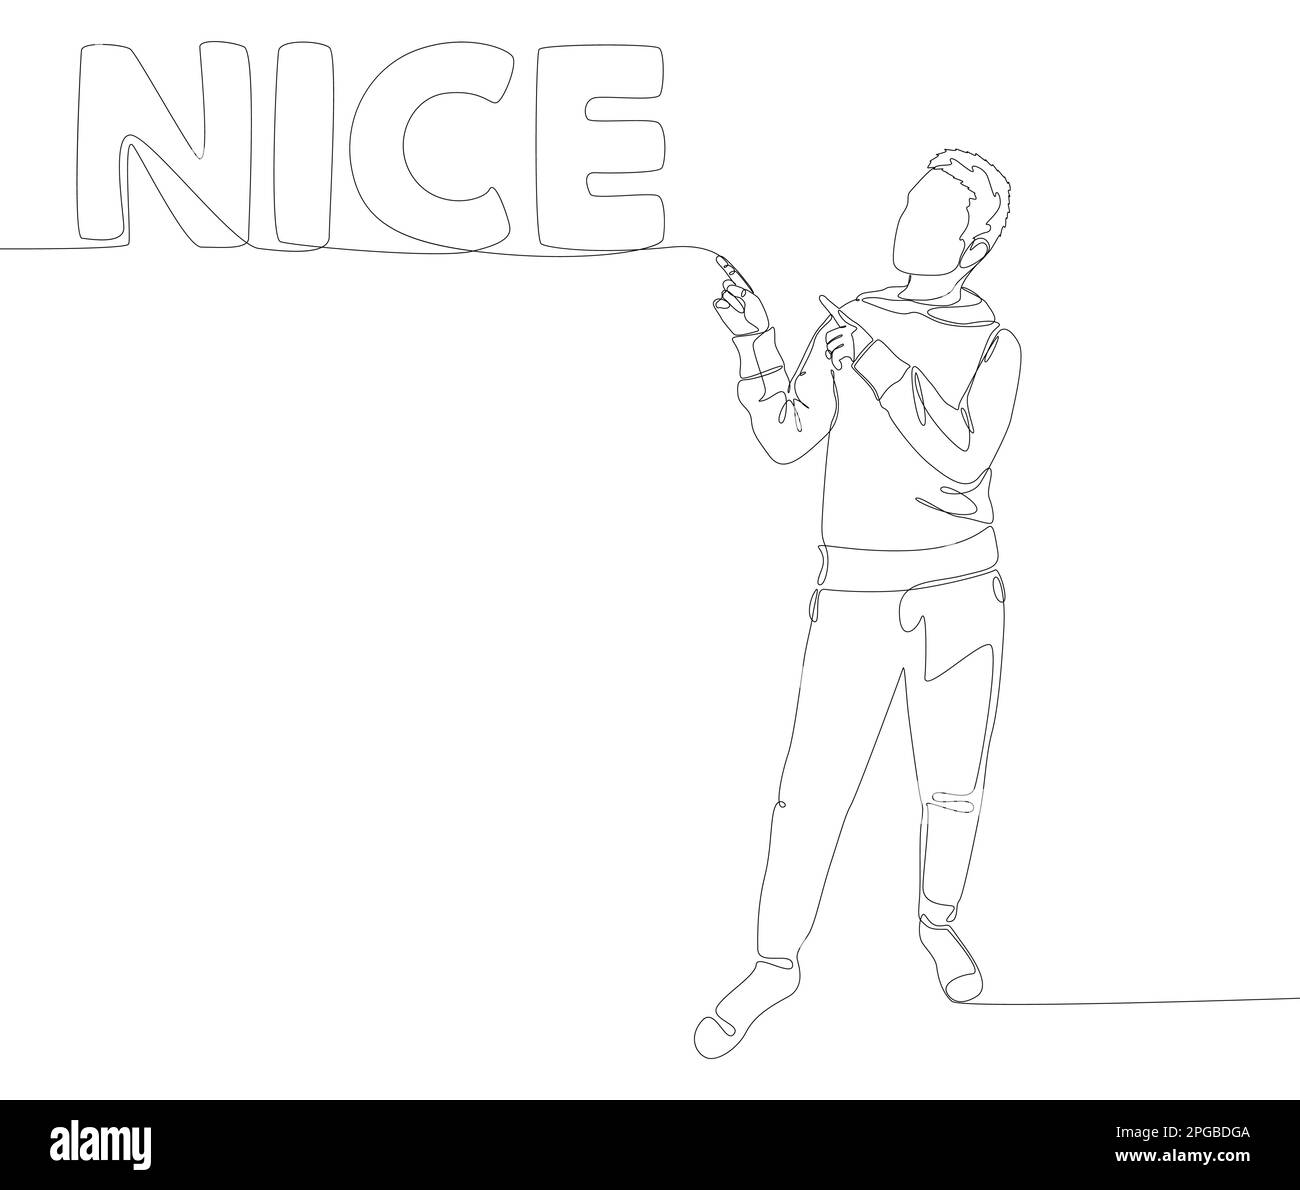 Eine durchgehende Linie von Mann, der mit dem Finger auf das Wort Nizza zeigt. Vektorkonzept zur Darstellung dünner Linien. Kontur Zeichnen kreativer Ideen. Stock Vektor